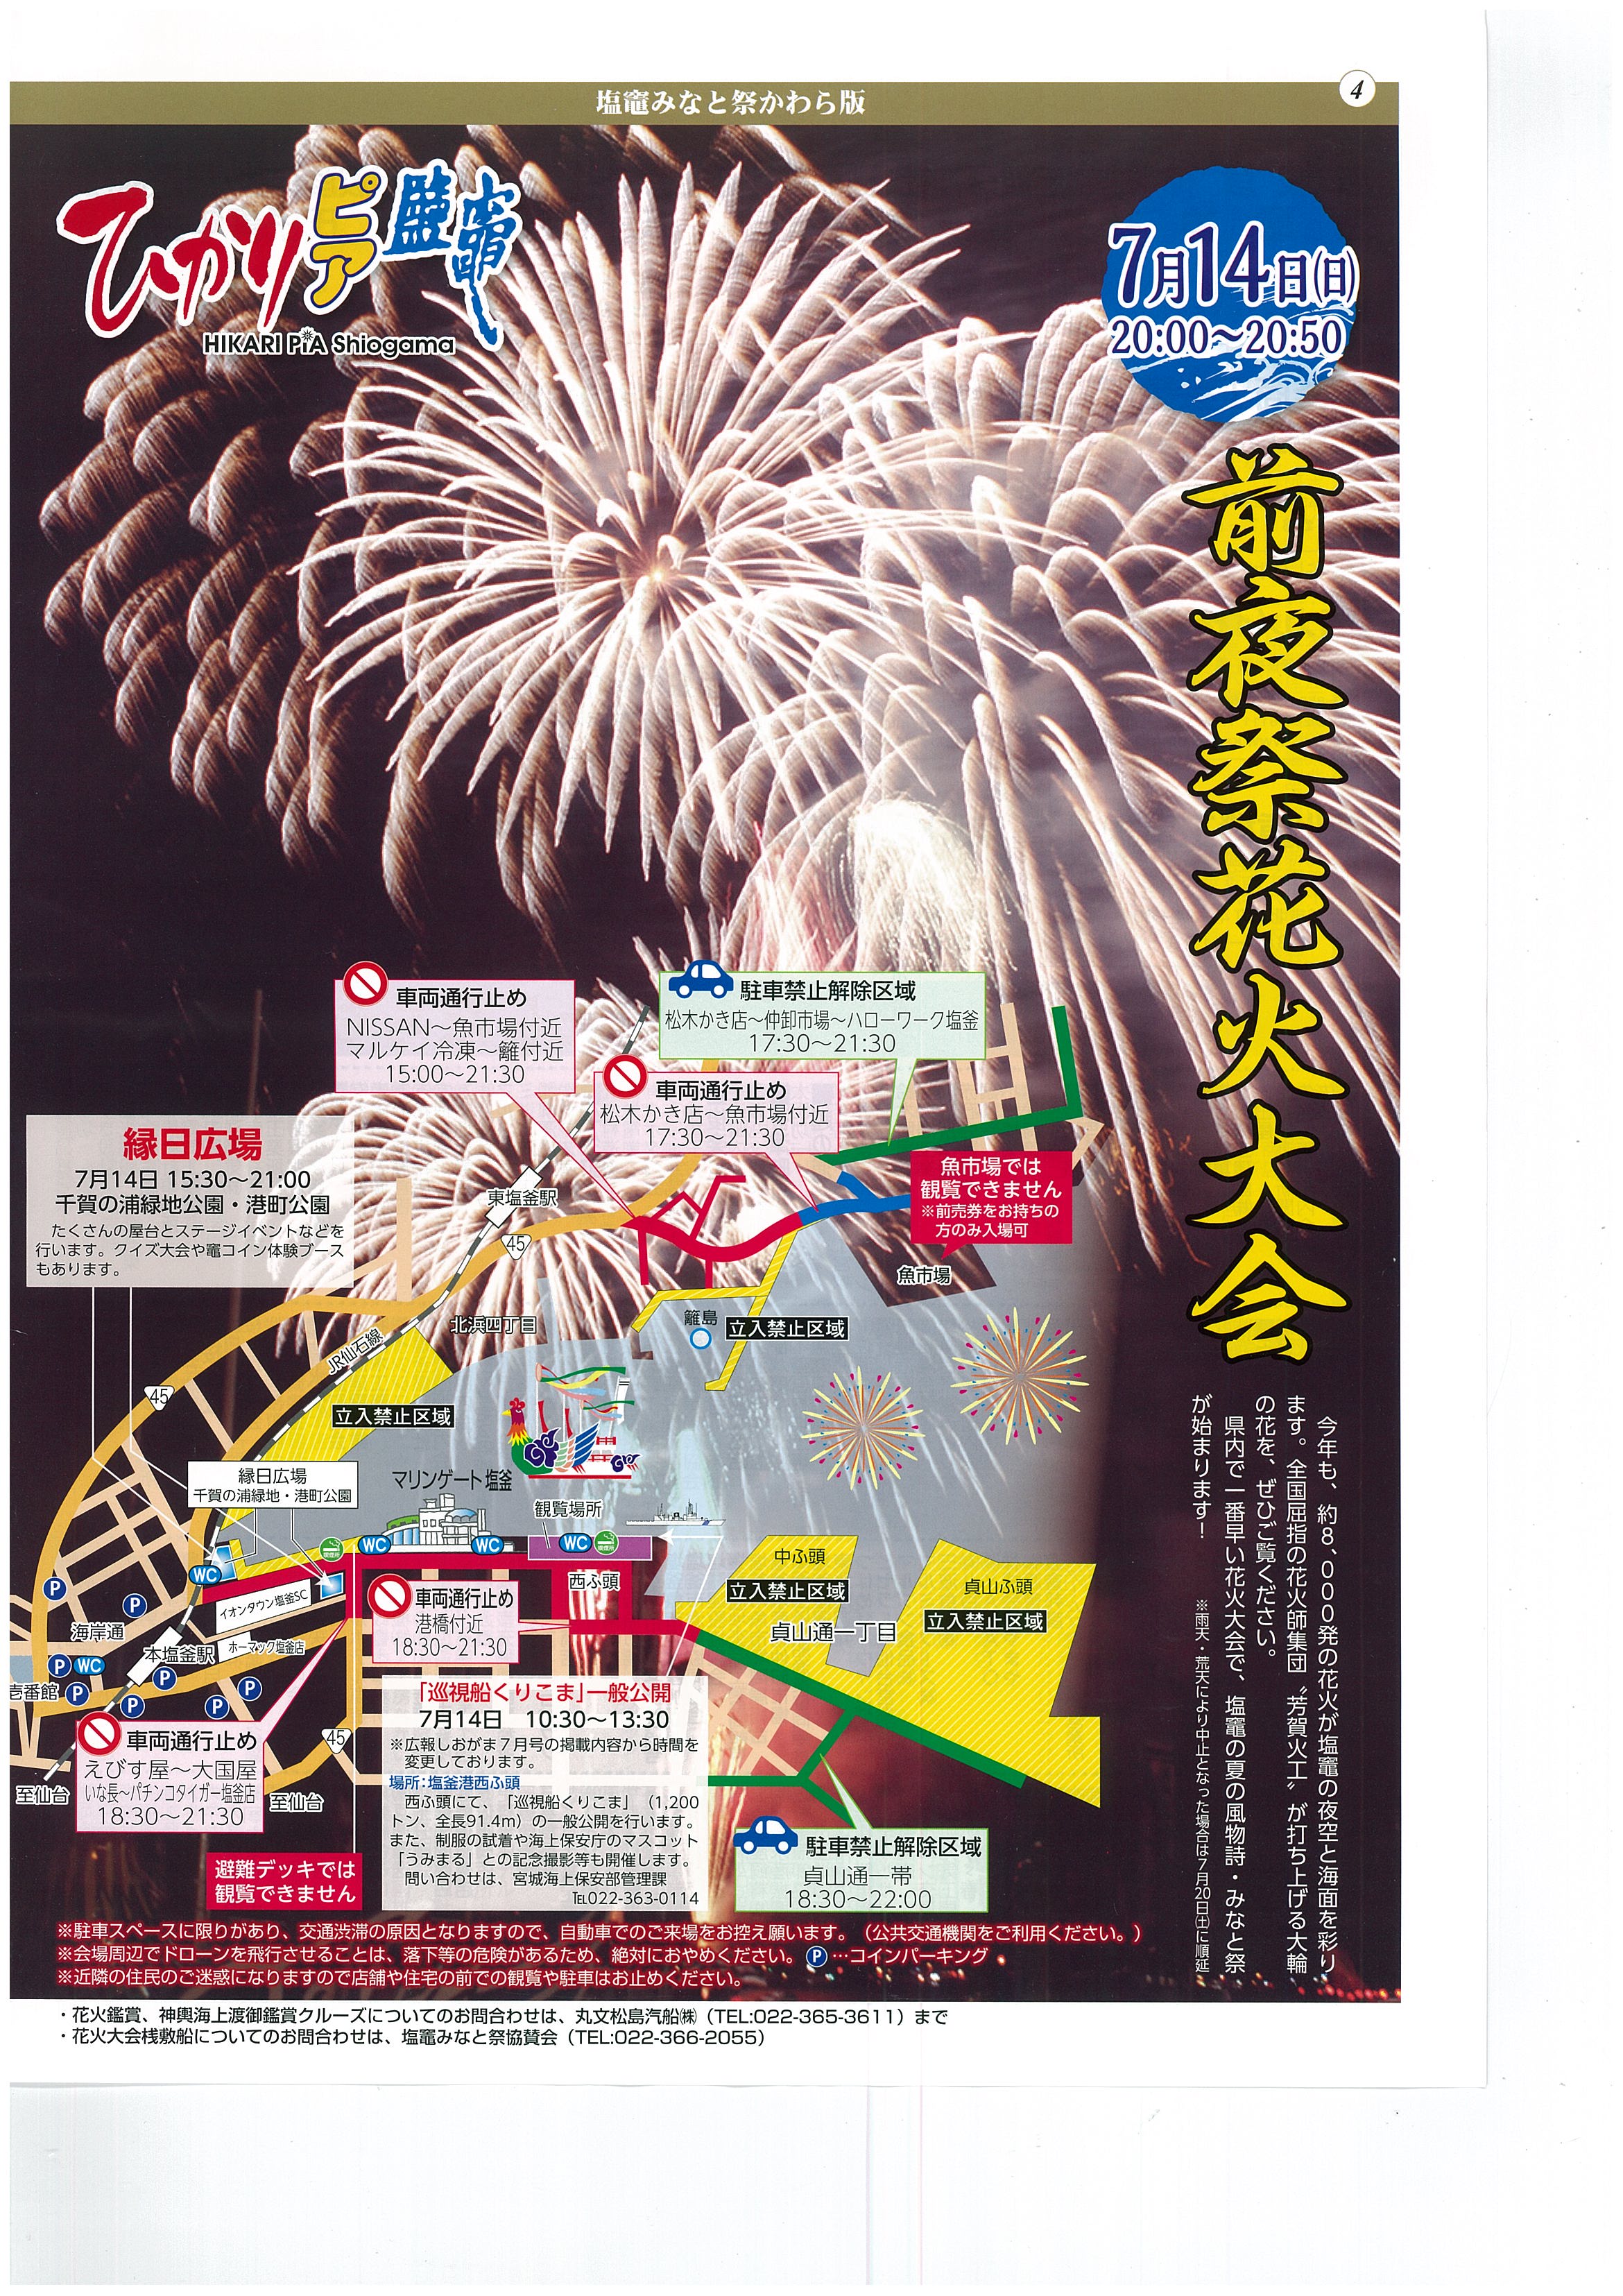 7月15日 海の日 塩竈みなと祭が開催されます 新着情報 松島センチュリーホテル 公式hp